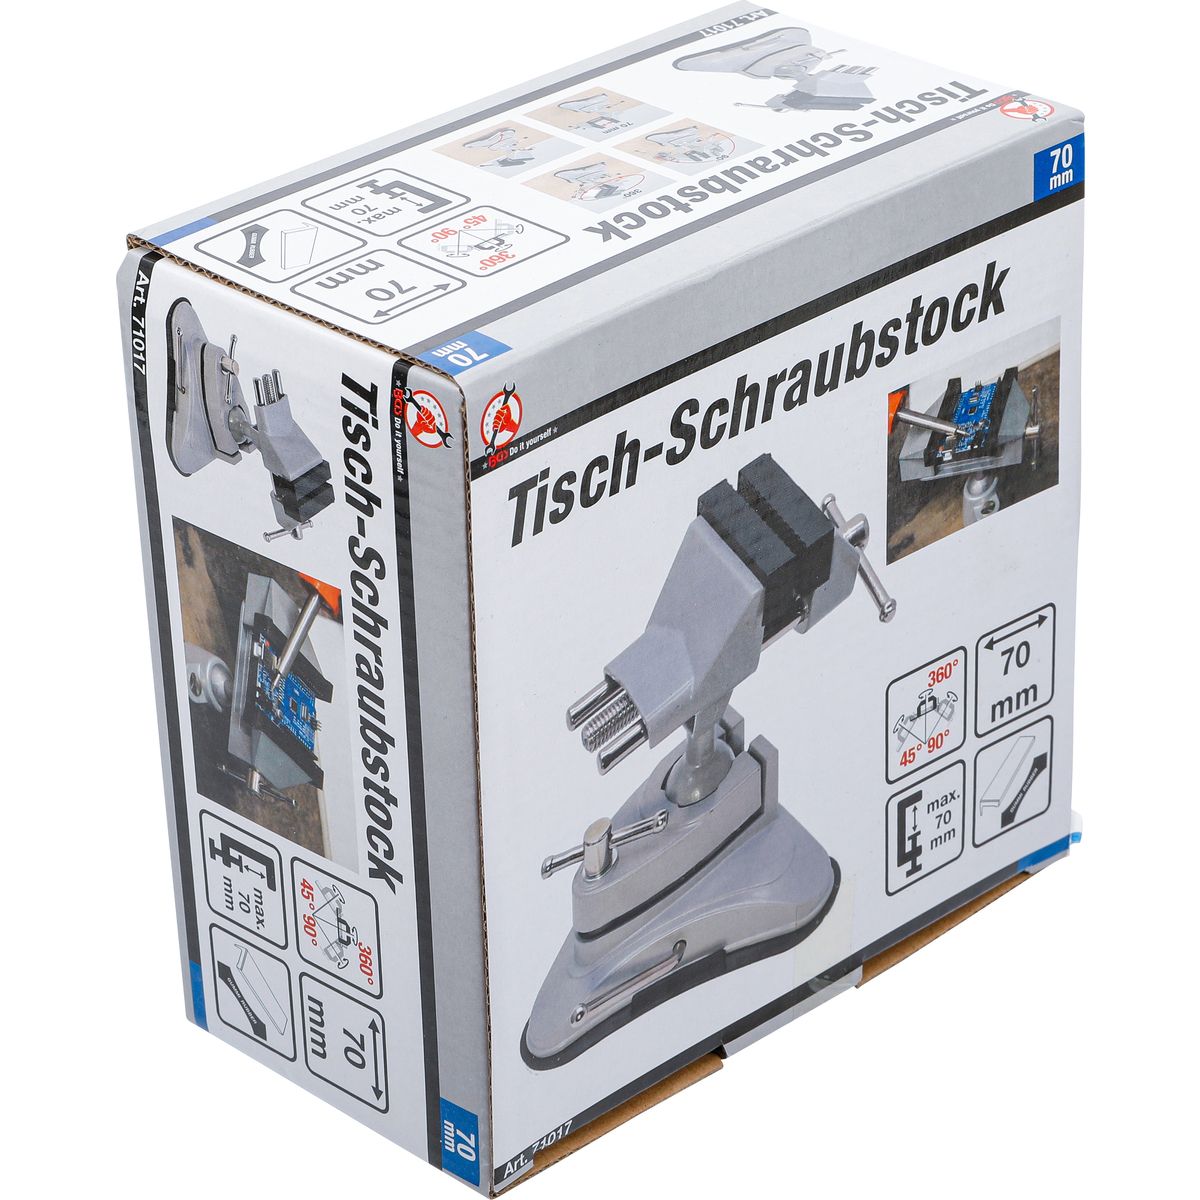 Tisch-Schraubstock | schwenkbar | Backen 70 mm | mit Vakuum-Saugfuß